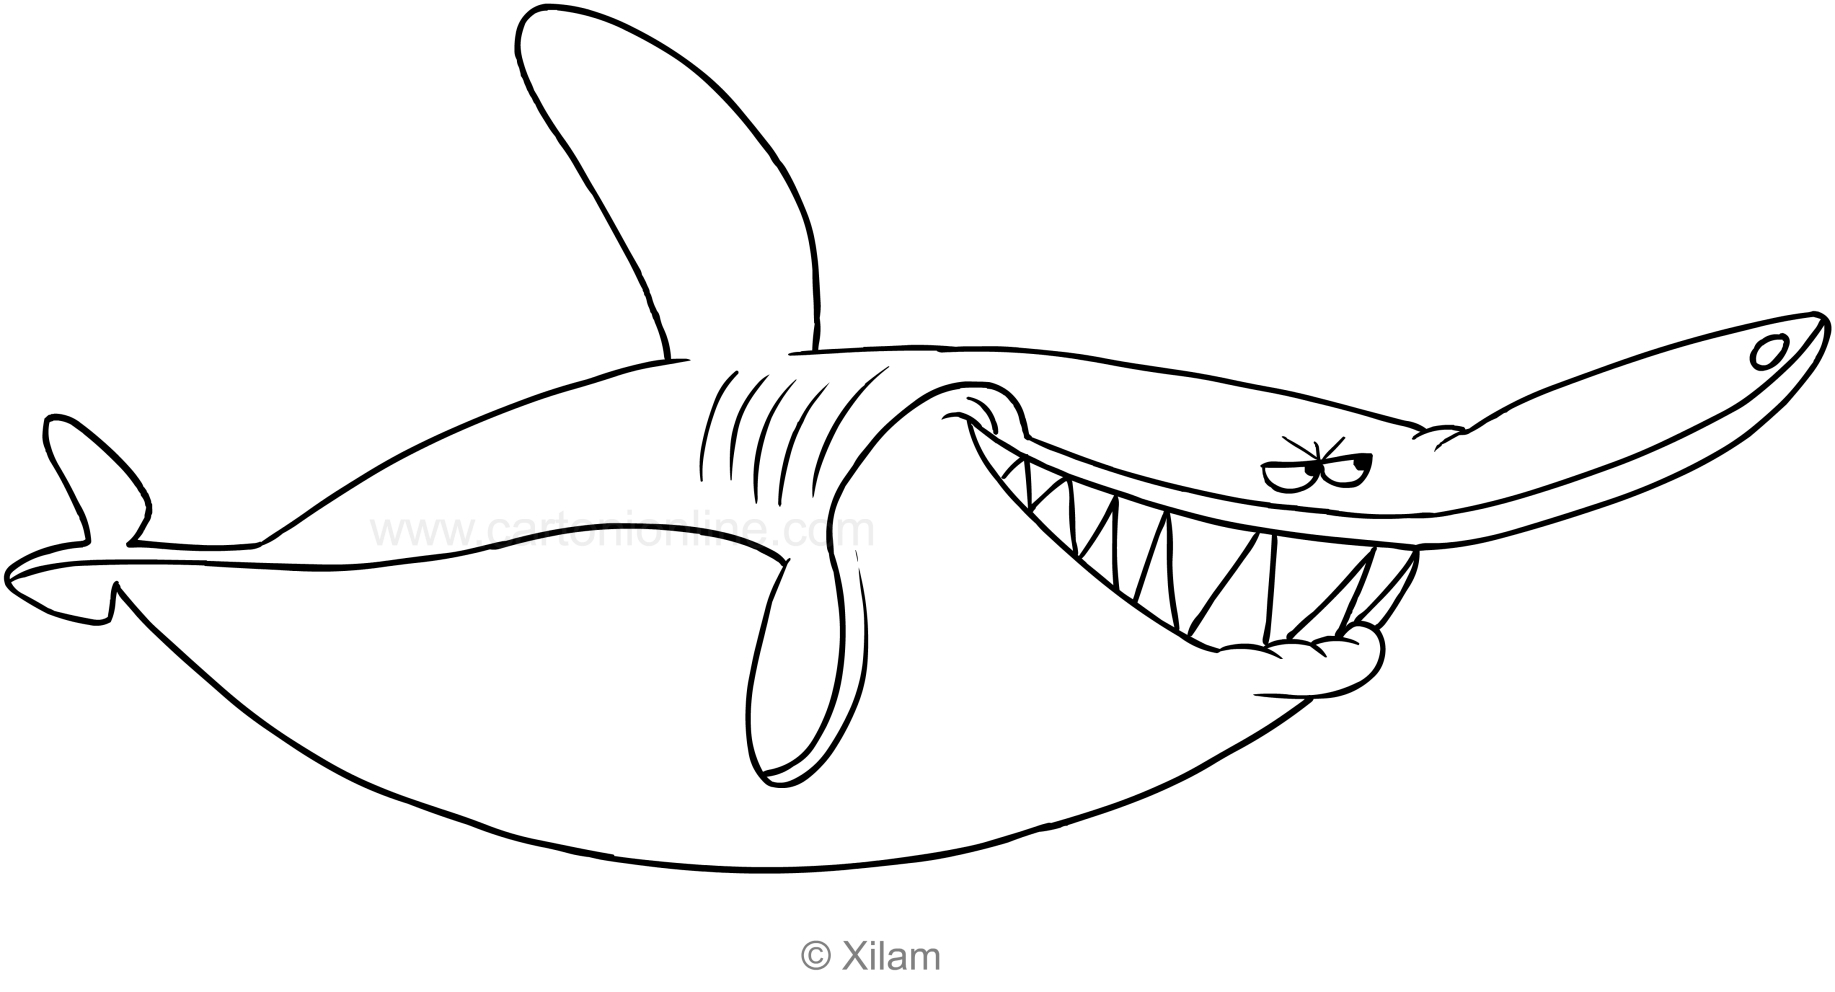 Coloriage De Sharko Le Requin destiné Coloriage Zig Et Sharko